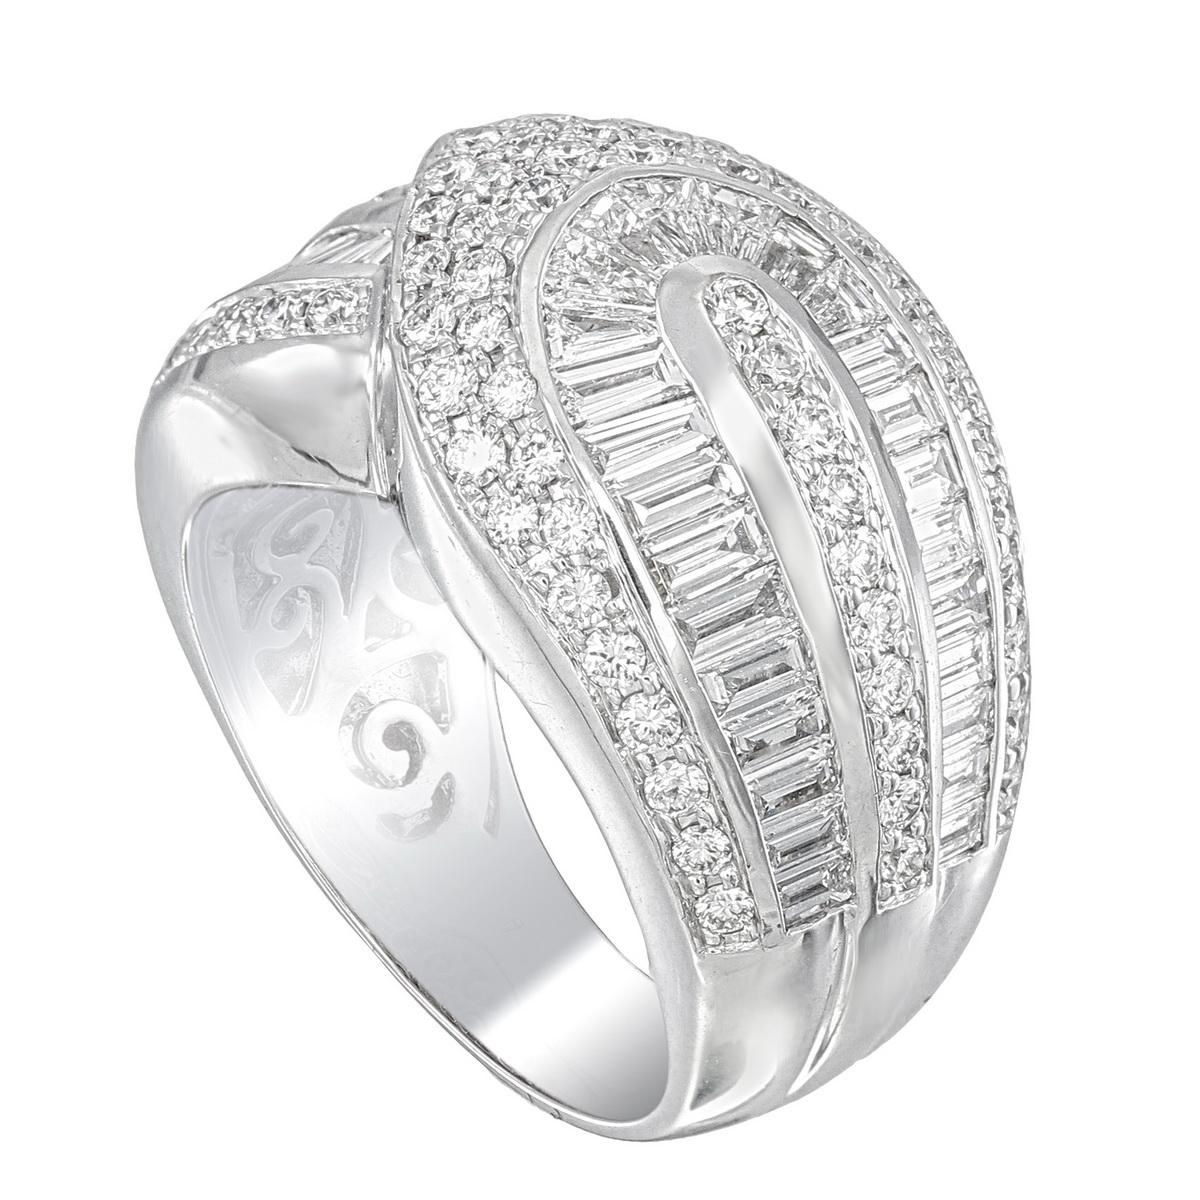 Ein neuer diamantener Ehering. 1.02 Karat runde Diamanten und 1,52 Karat Diamanten in der Mitte dieses Rings. Dieser Ring zeichnet sich durch einen kühnen und modernen Stil aus, der ihn hervorhebt. Das Gesamtgewicht dieses Rings beträgt 14,74